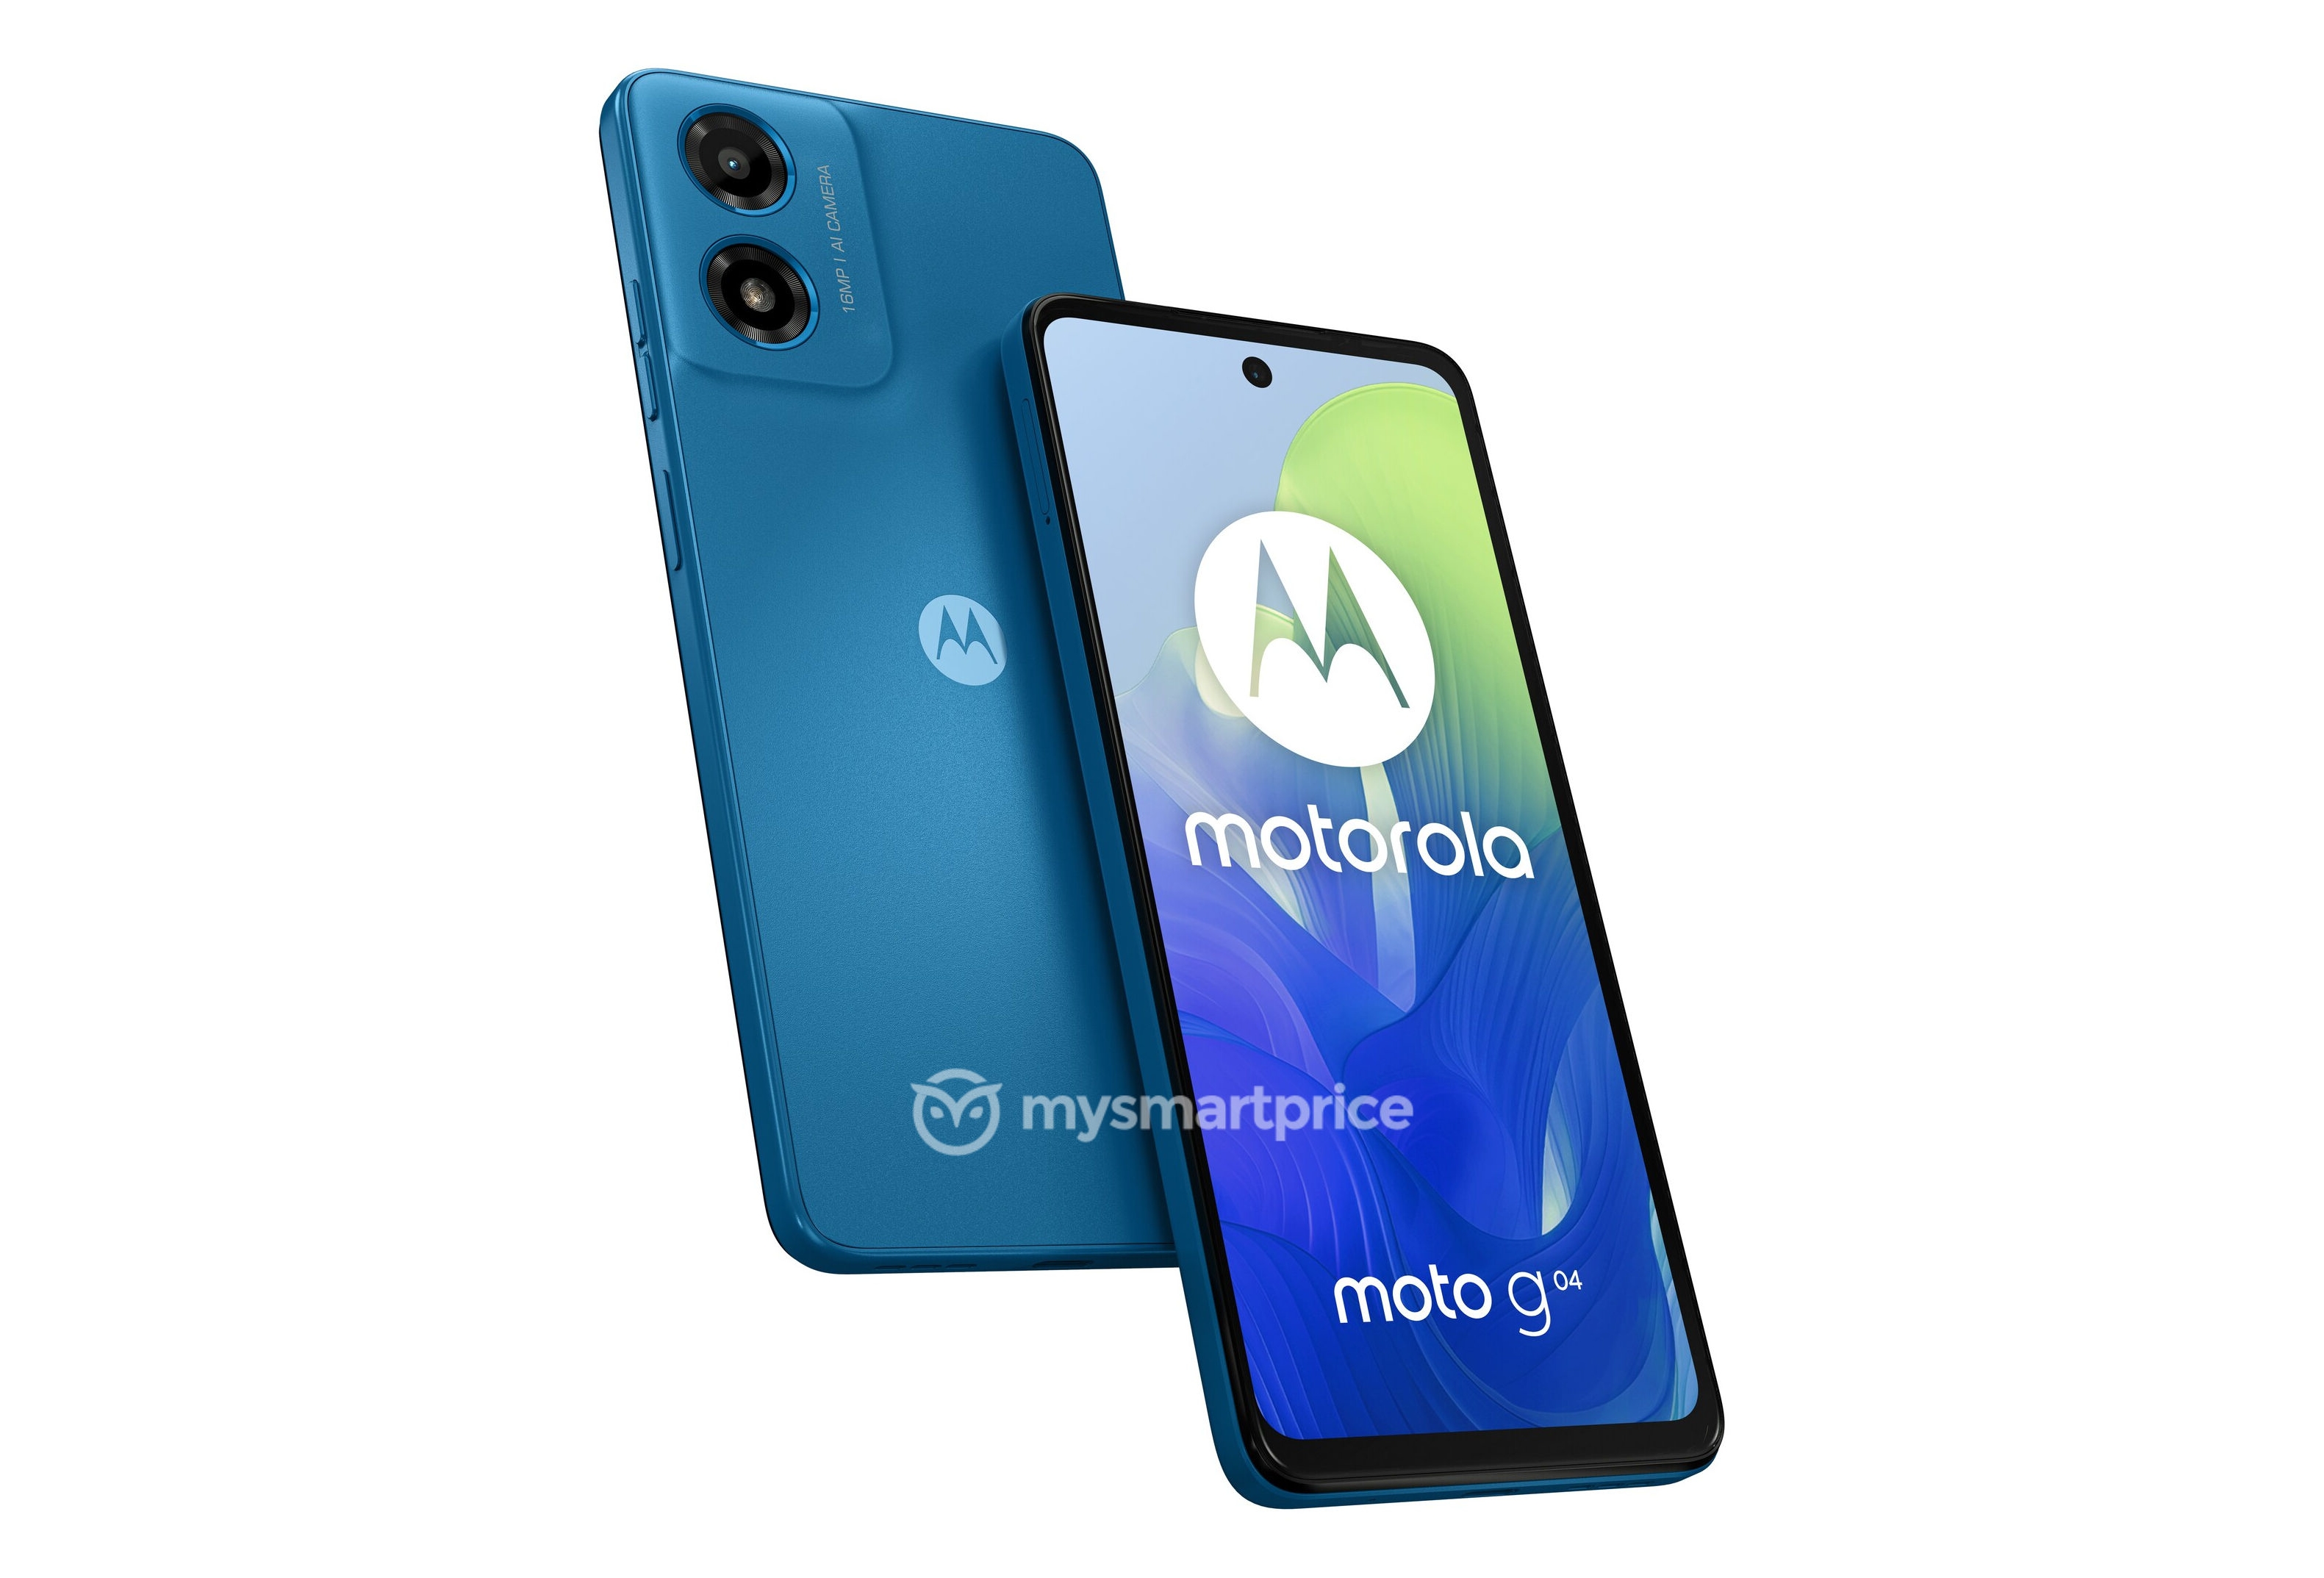 Motorola s'apprête à commercialiser un smartphone économique Moto G04 doté d'un appareil photo de 16 mégapixels.